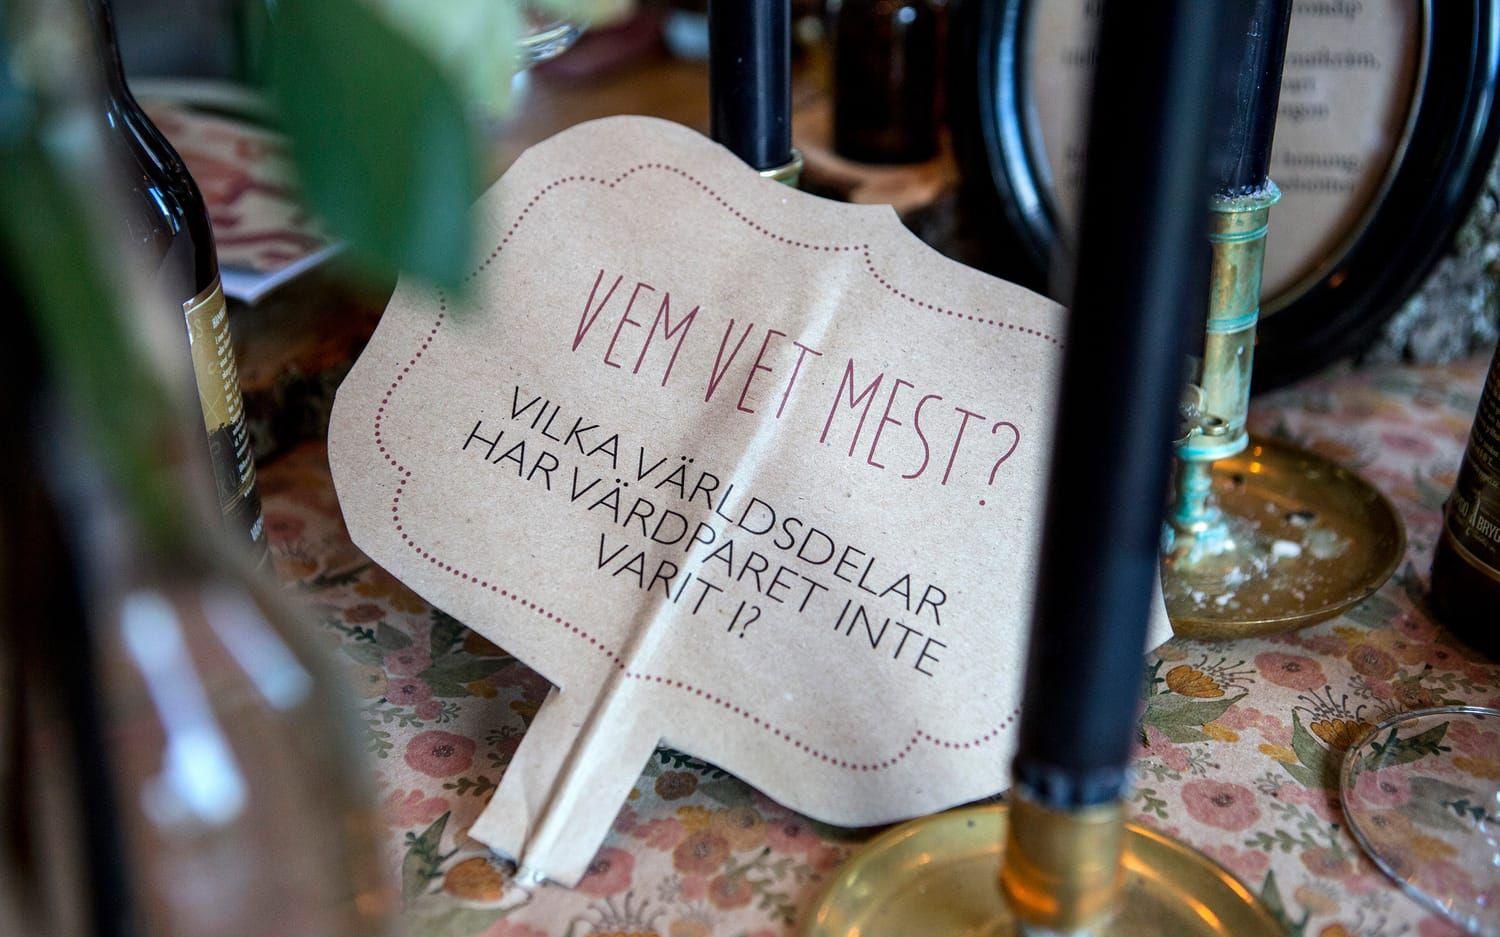 Om alla gäster inte känner varandra kan man bryta isen med konversationskort på bordet, så att samtalet kommer igång. Foto: Christine Olsson/TT